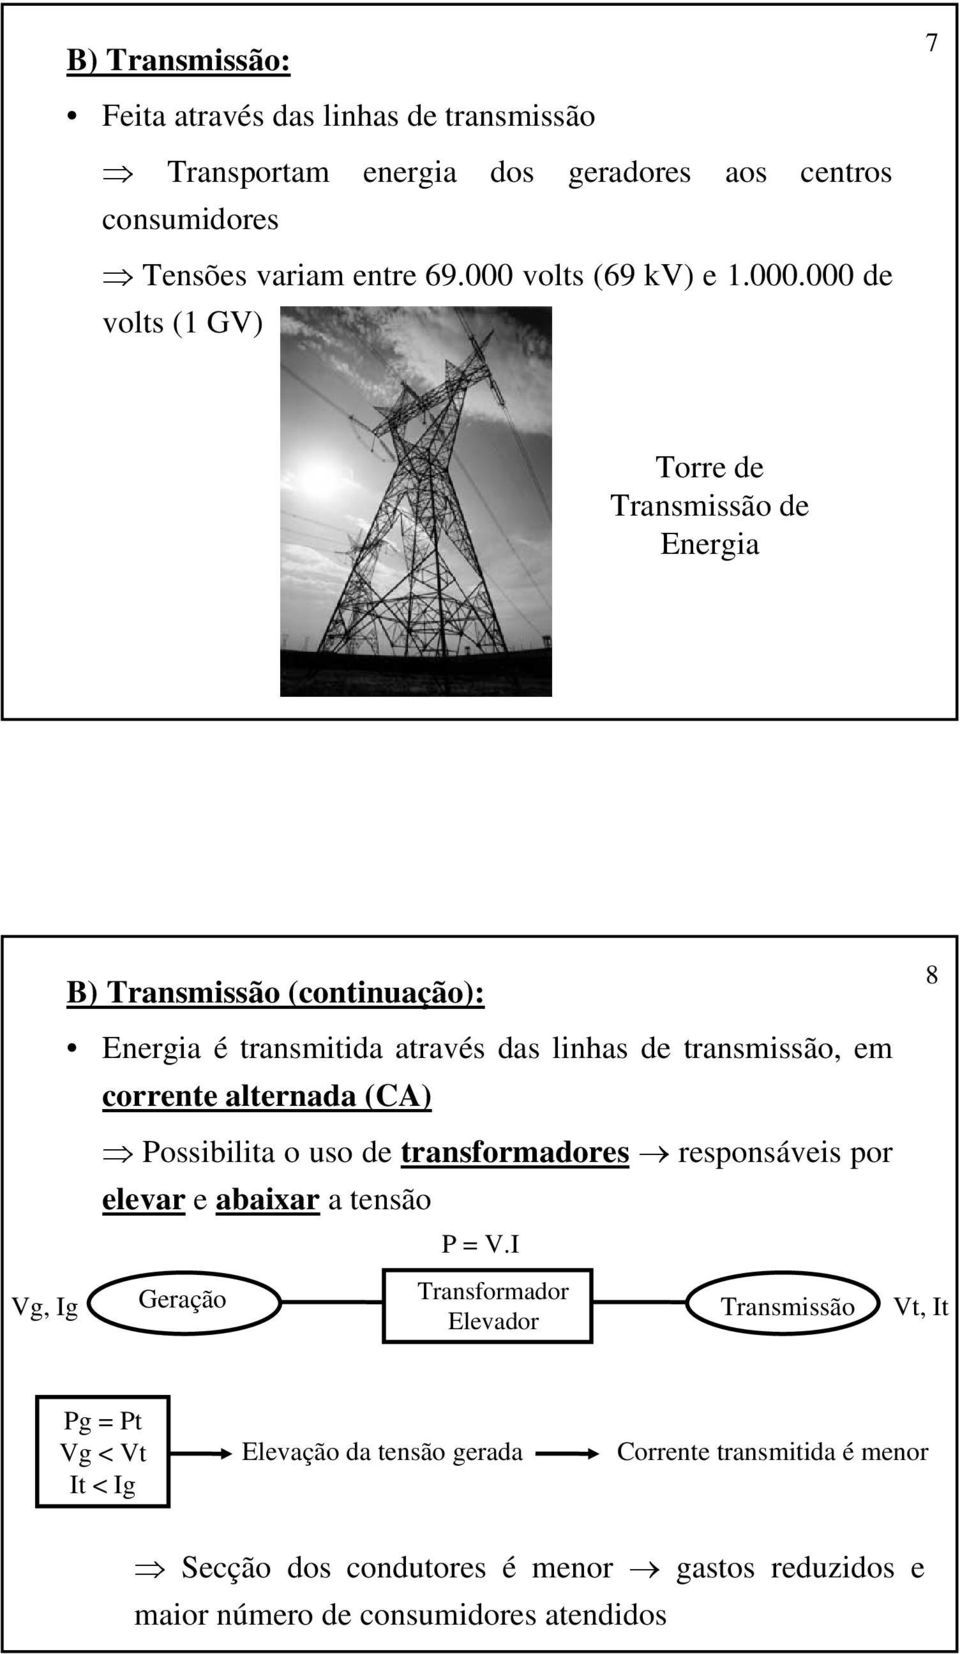 transmissão, em corrente alternada (CA) Possibilita o uso de transformadores responsáveis por elevar e abaixar a tensão P = V.